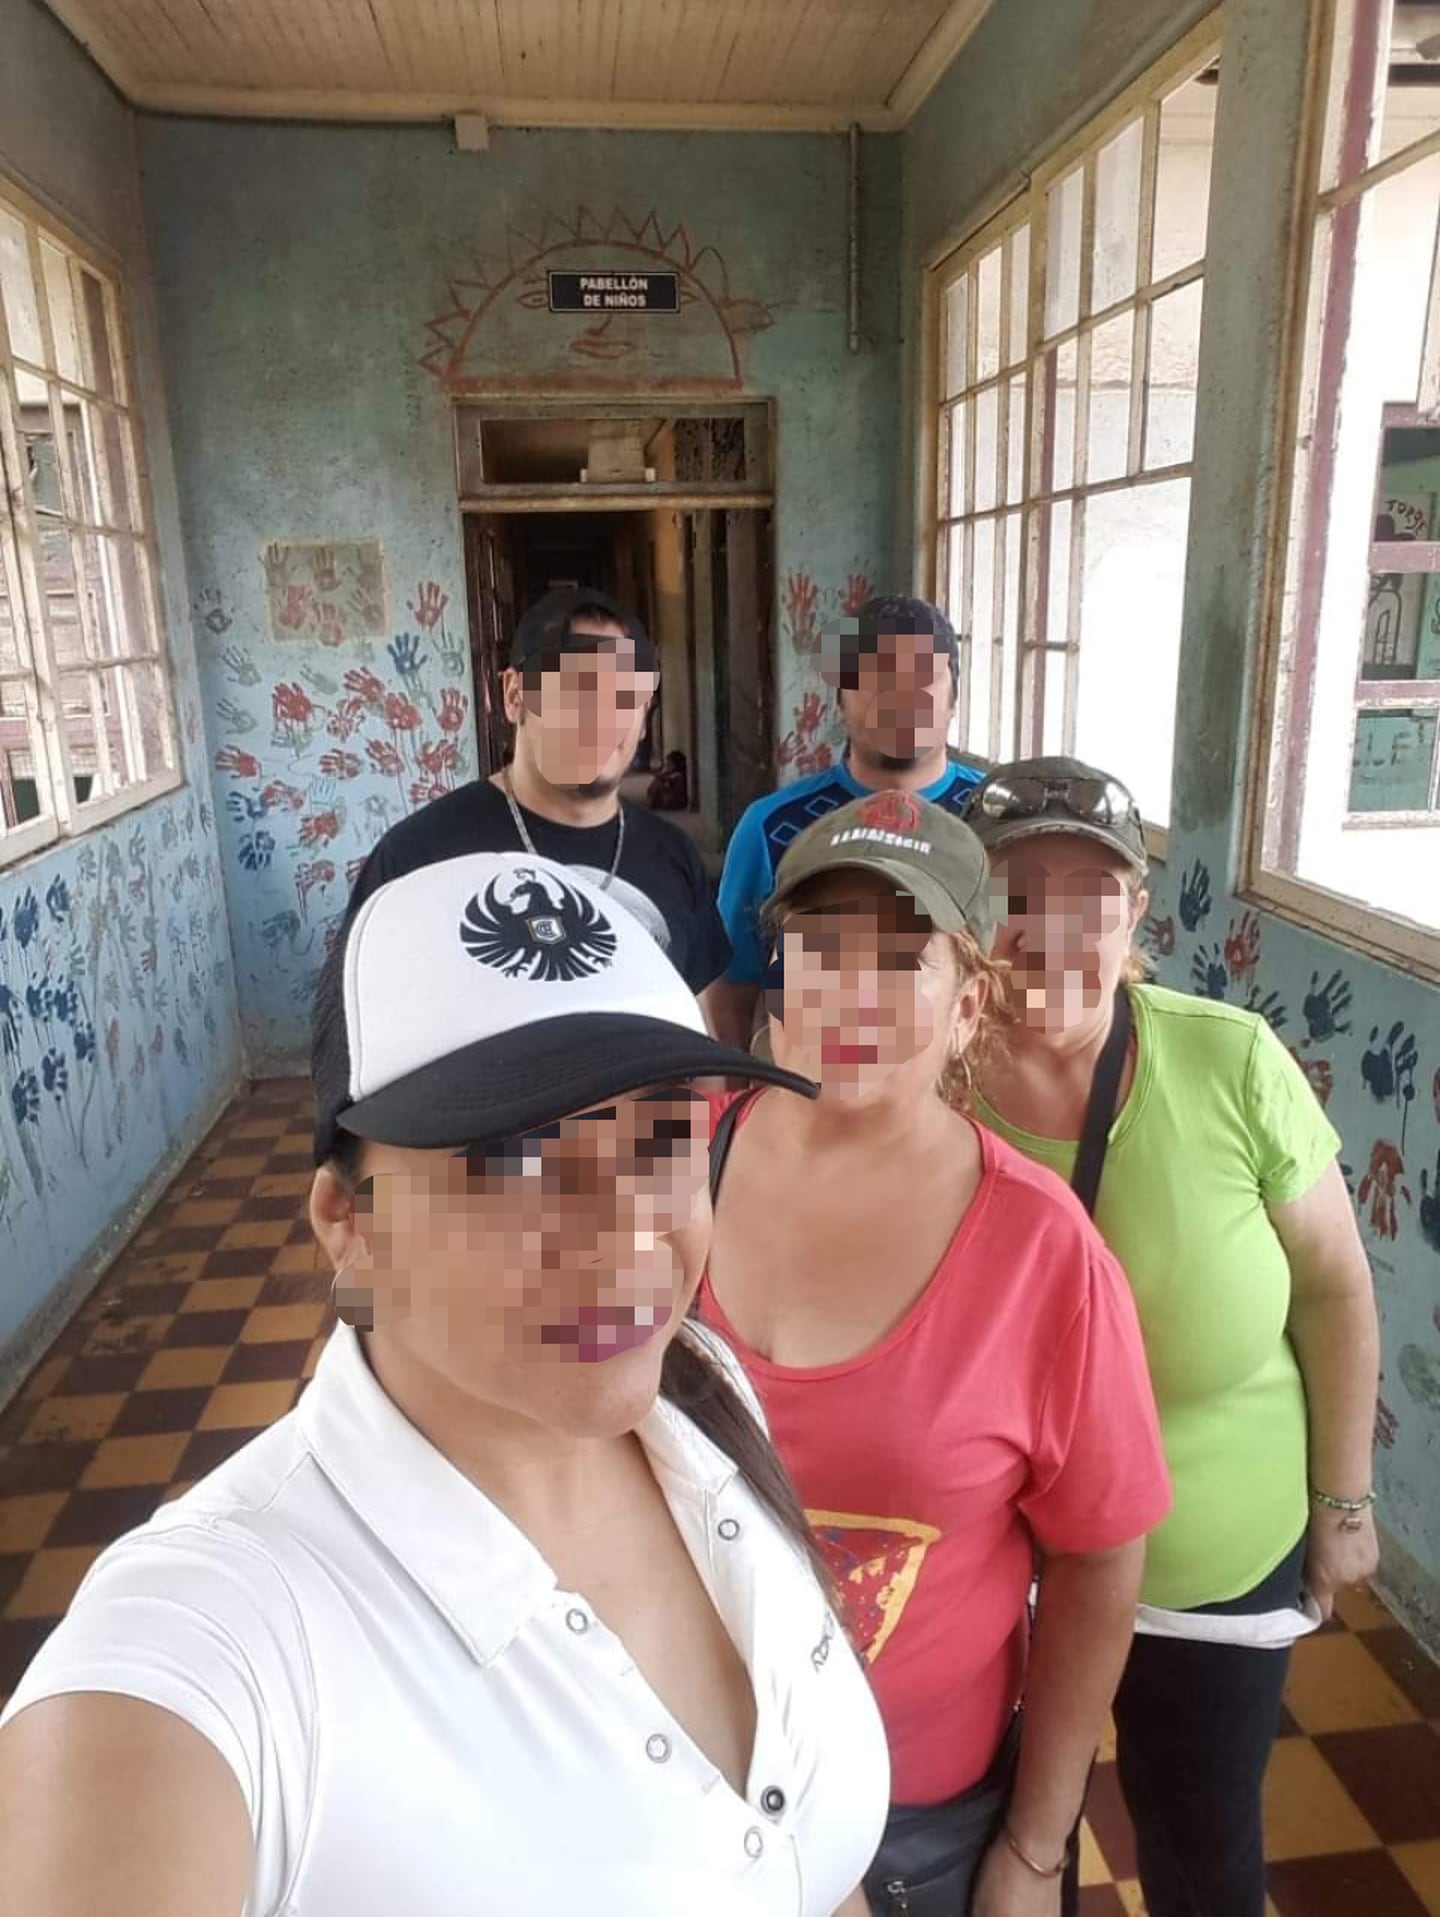 Una familia de San José visitó el sanatorio Durán en Cartago y entre las fotos que se tomaron descubrieron que en una aparece el fantasma de una niña sentada al fondo de uno de los pasillos